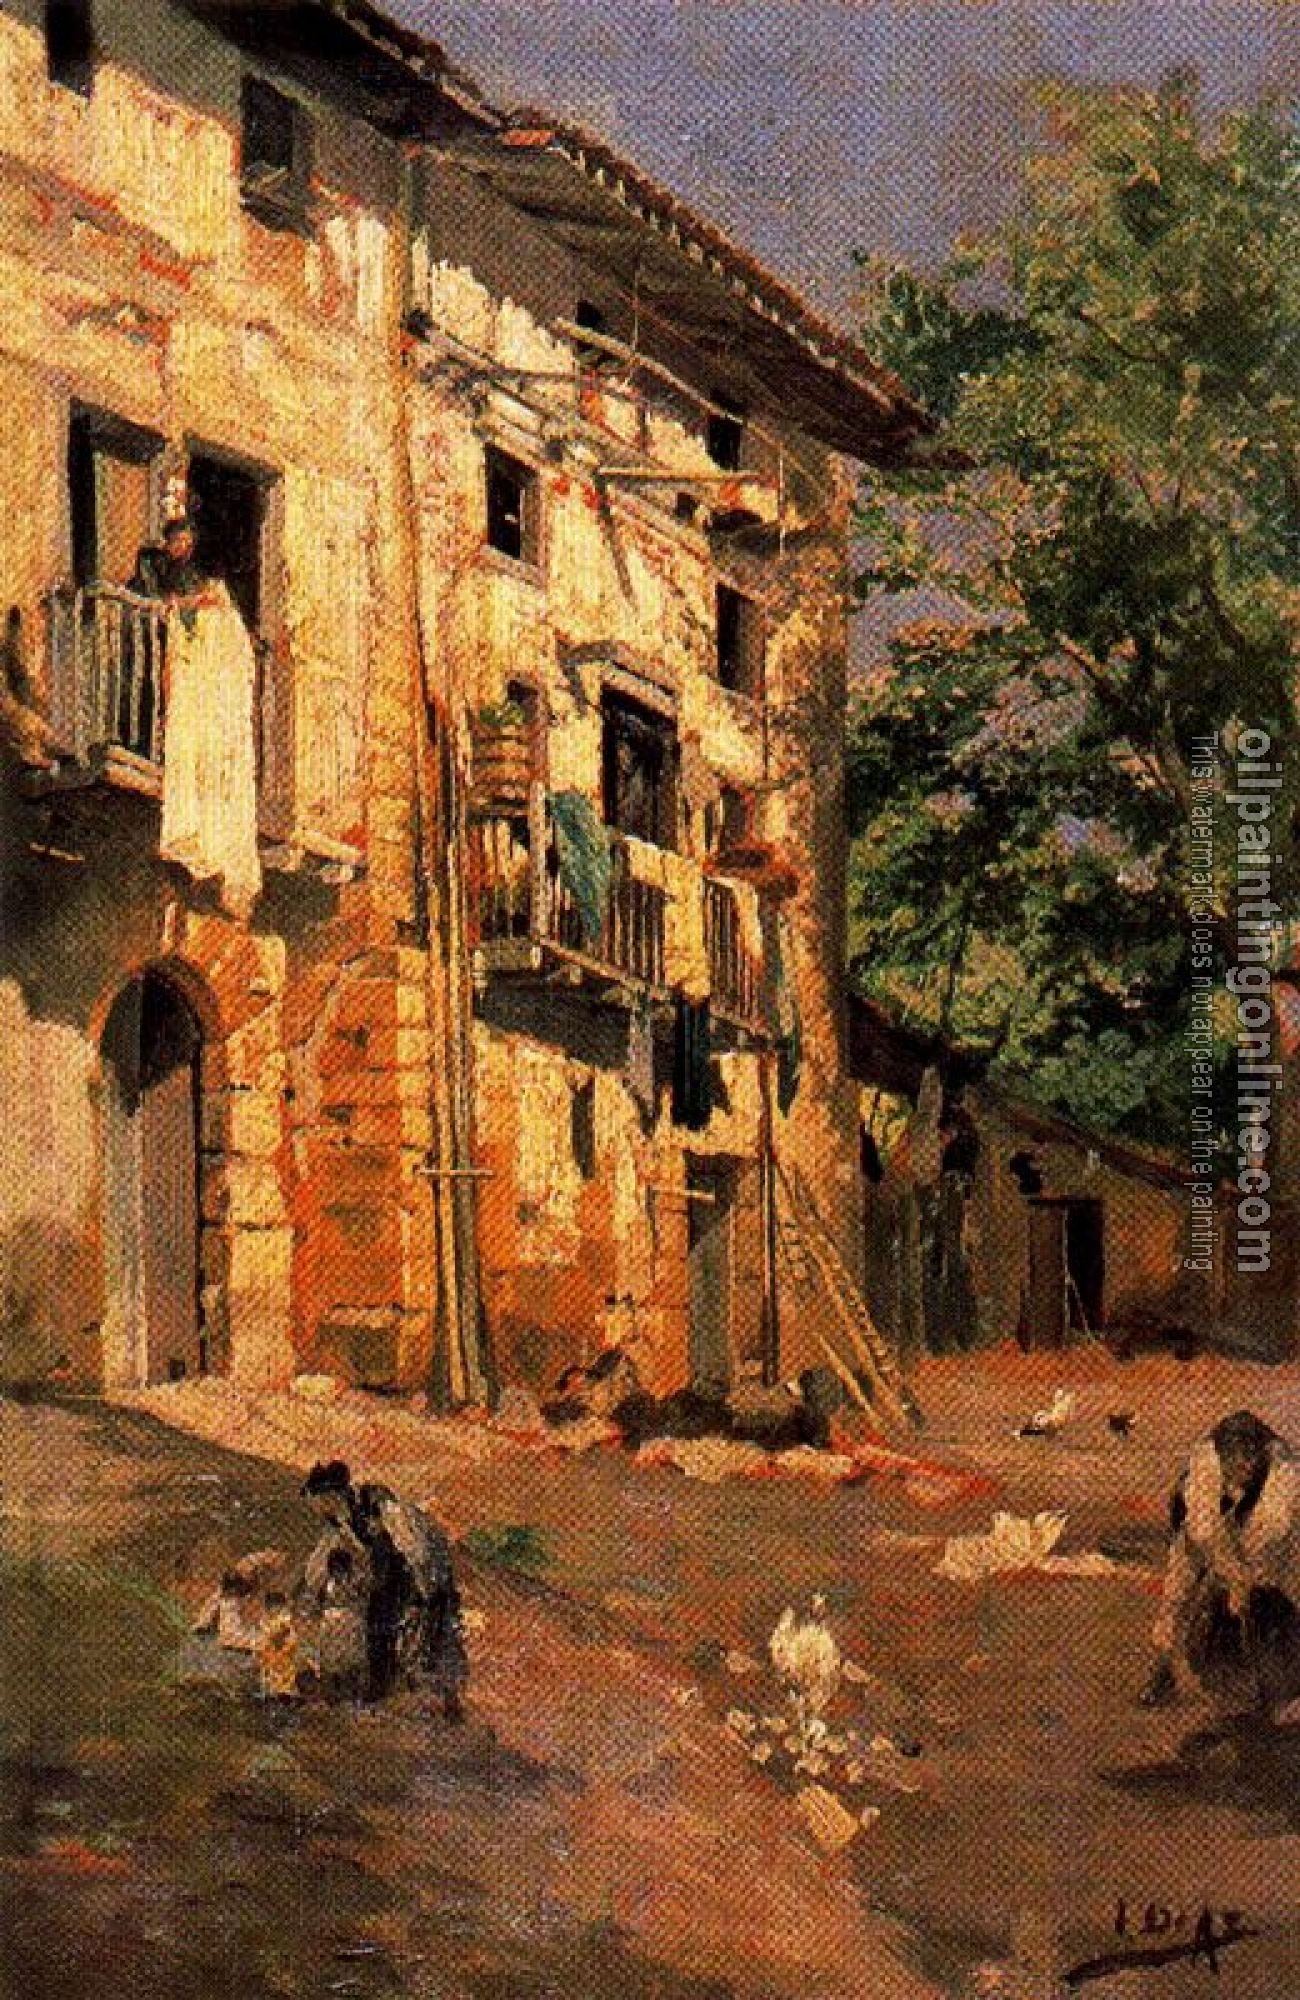 Ignacio Diaz Olano - Houses in Lequeitio